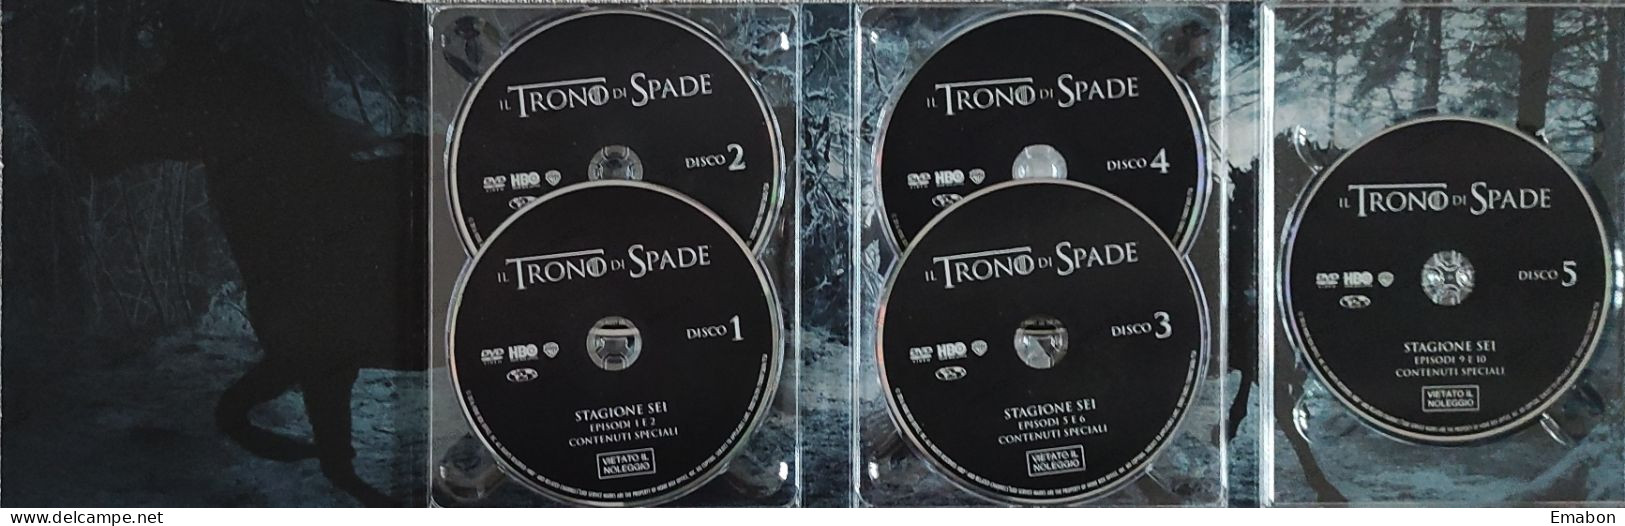 BORGATTA - FANTASTICO - BOX 5 Dvd " IL TRONO DI SPADE SESTA STAGIONE "-  - HBO 2015 -  USATO In Buono Stato - Fantasía